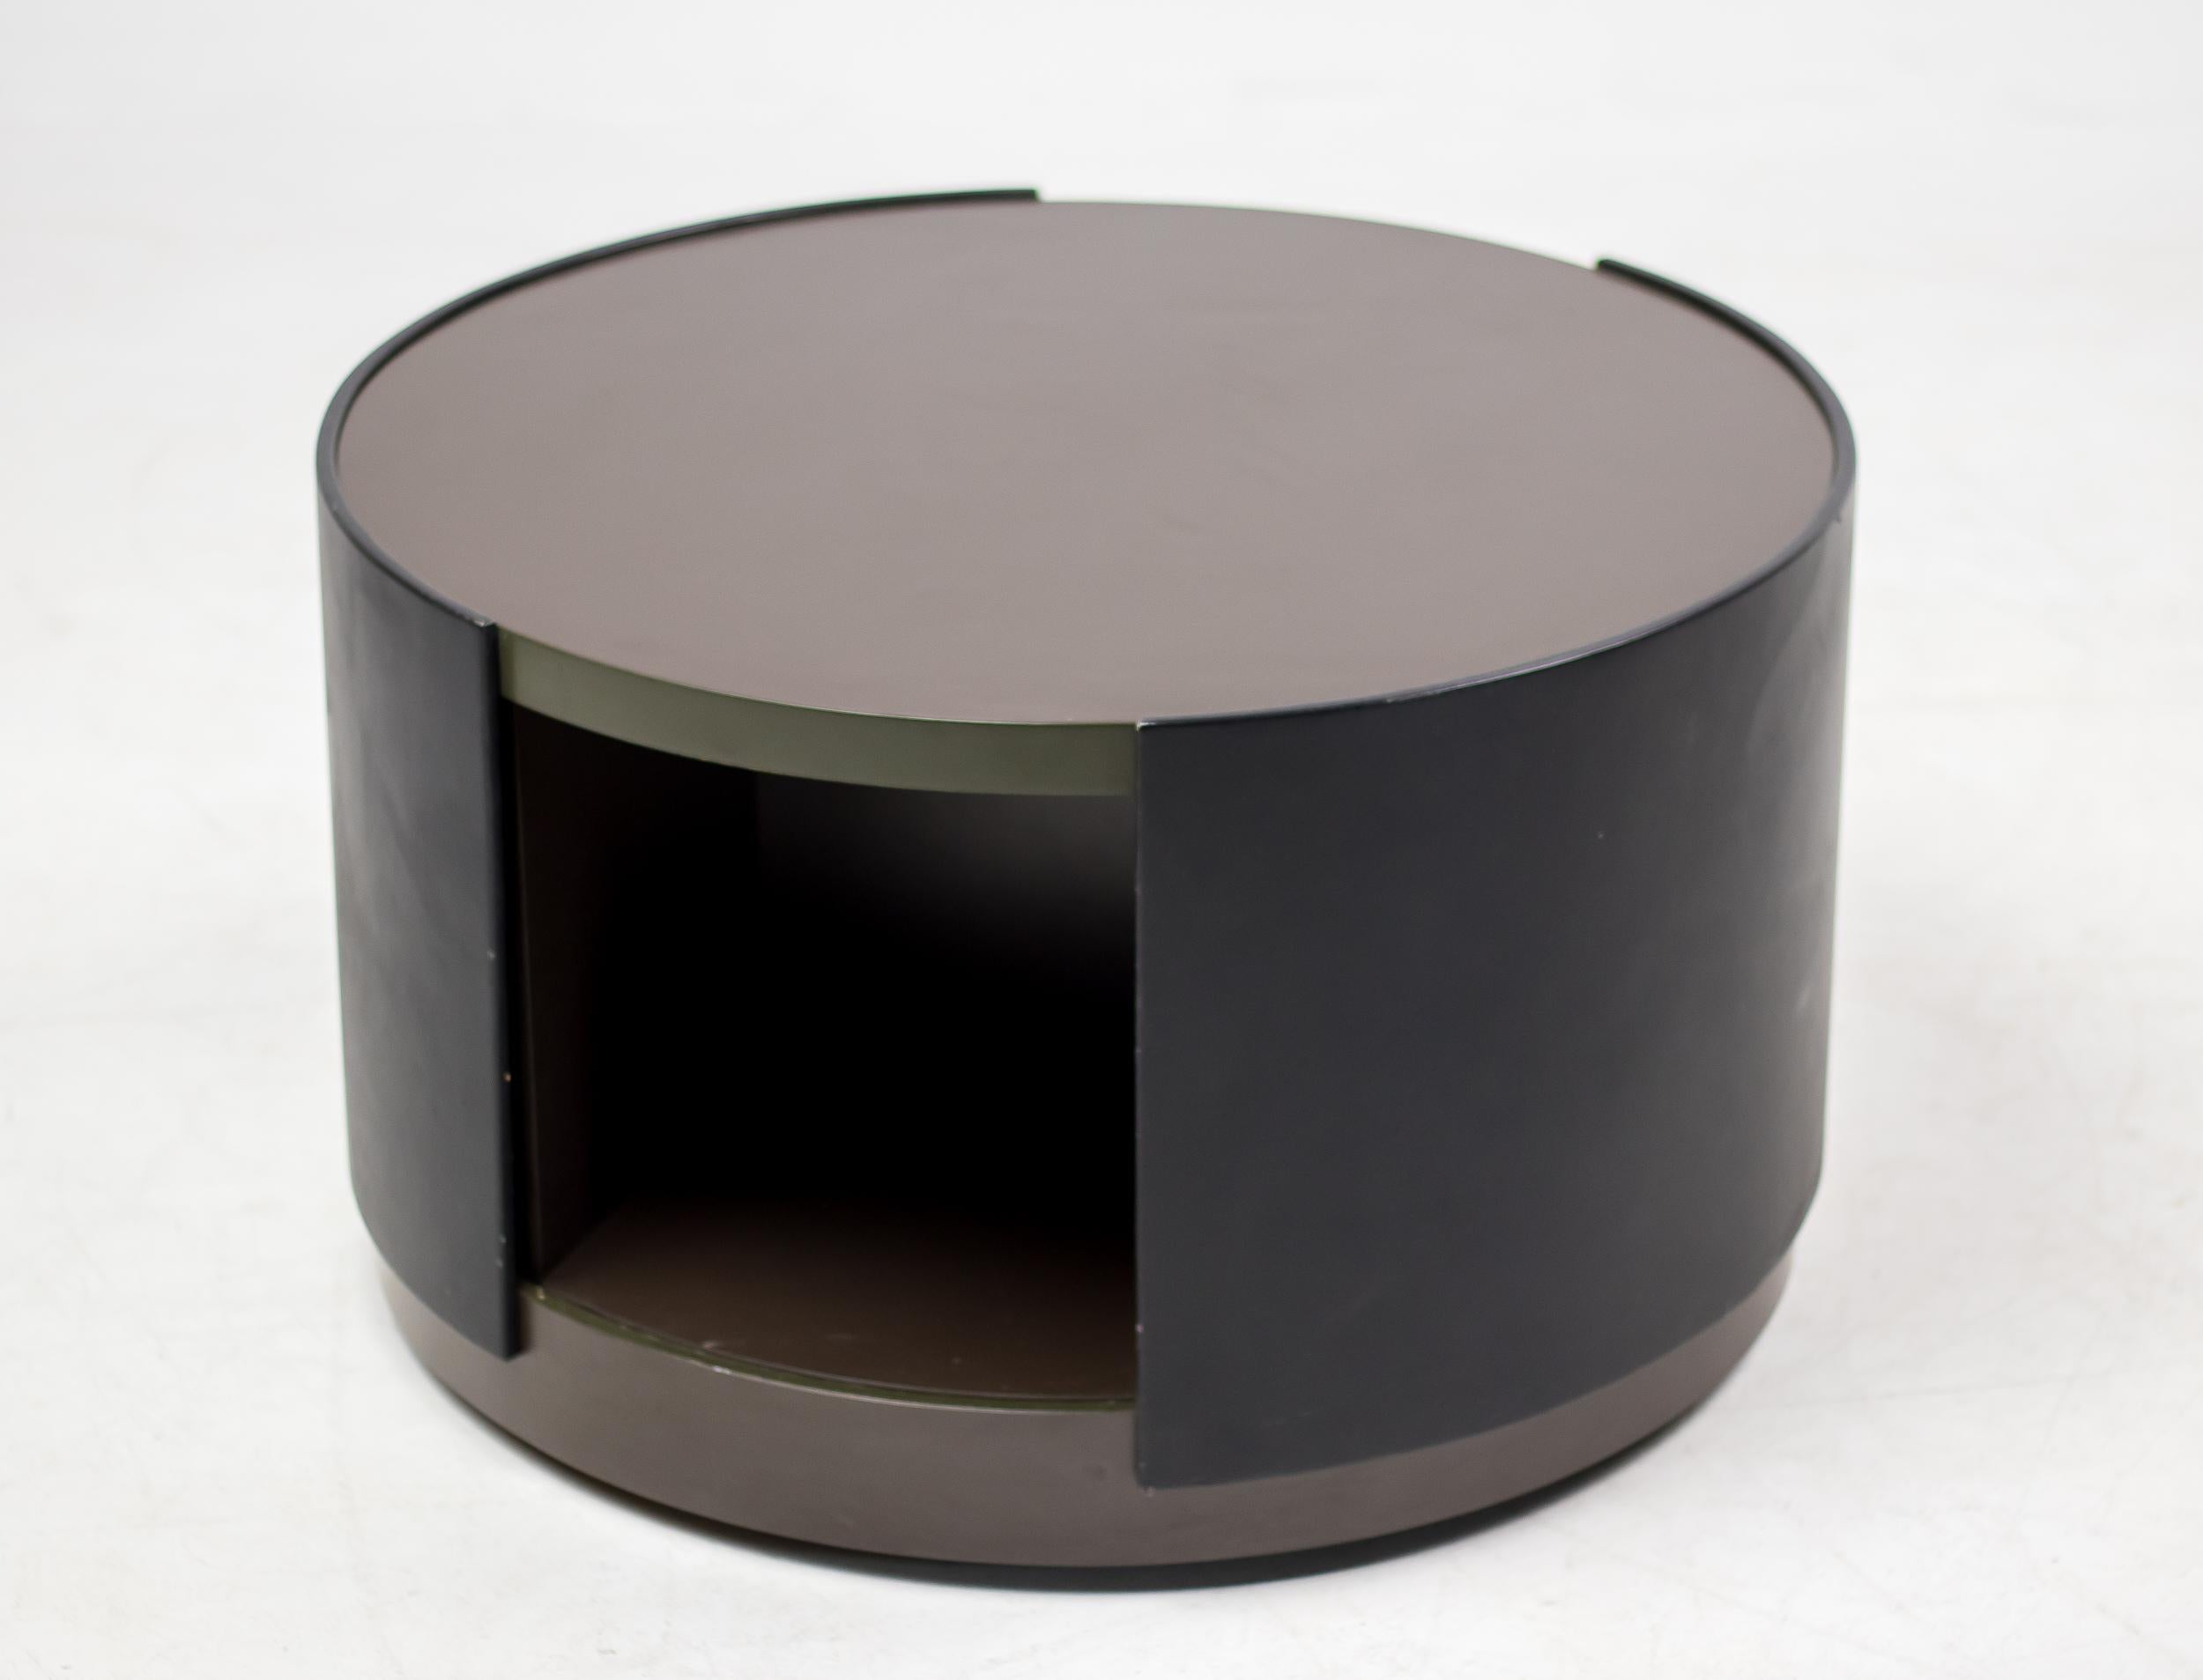 Cette rare armoire ronde sur roues cachées, conçue par Osvaldo Borsani pour Tecno, est fabriquée en contreplaqué laqué, en stratifié, en cuir et en acier. L'intérieur en contreplaqué laqué gris foncé s'articule autour de l'extérieur revêtu de cuir